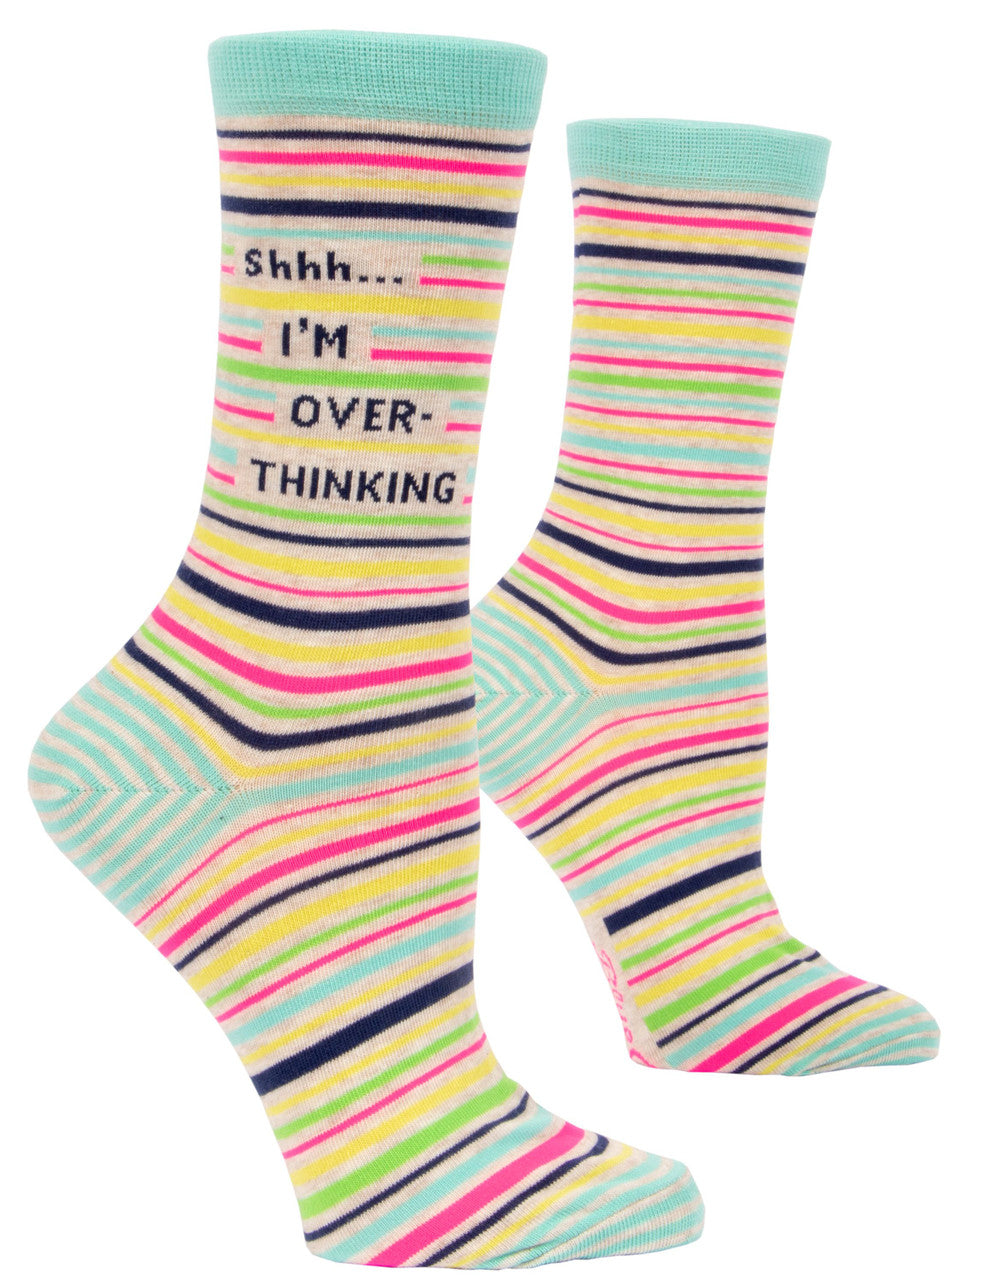 Shhh I'm Overthinking - Women's Socks